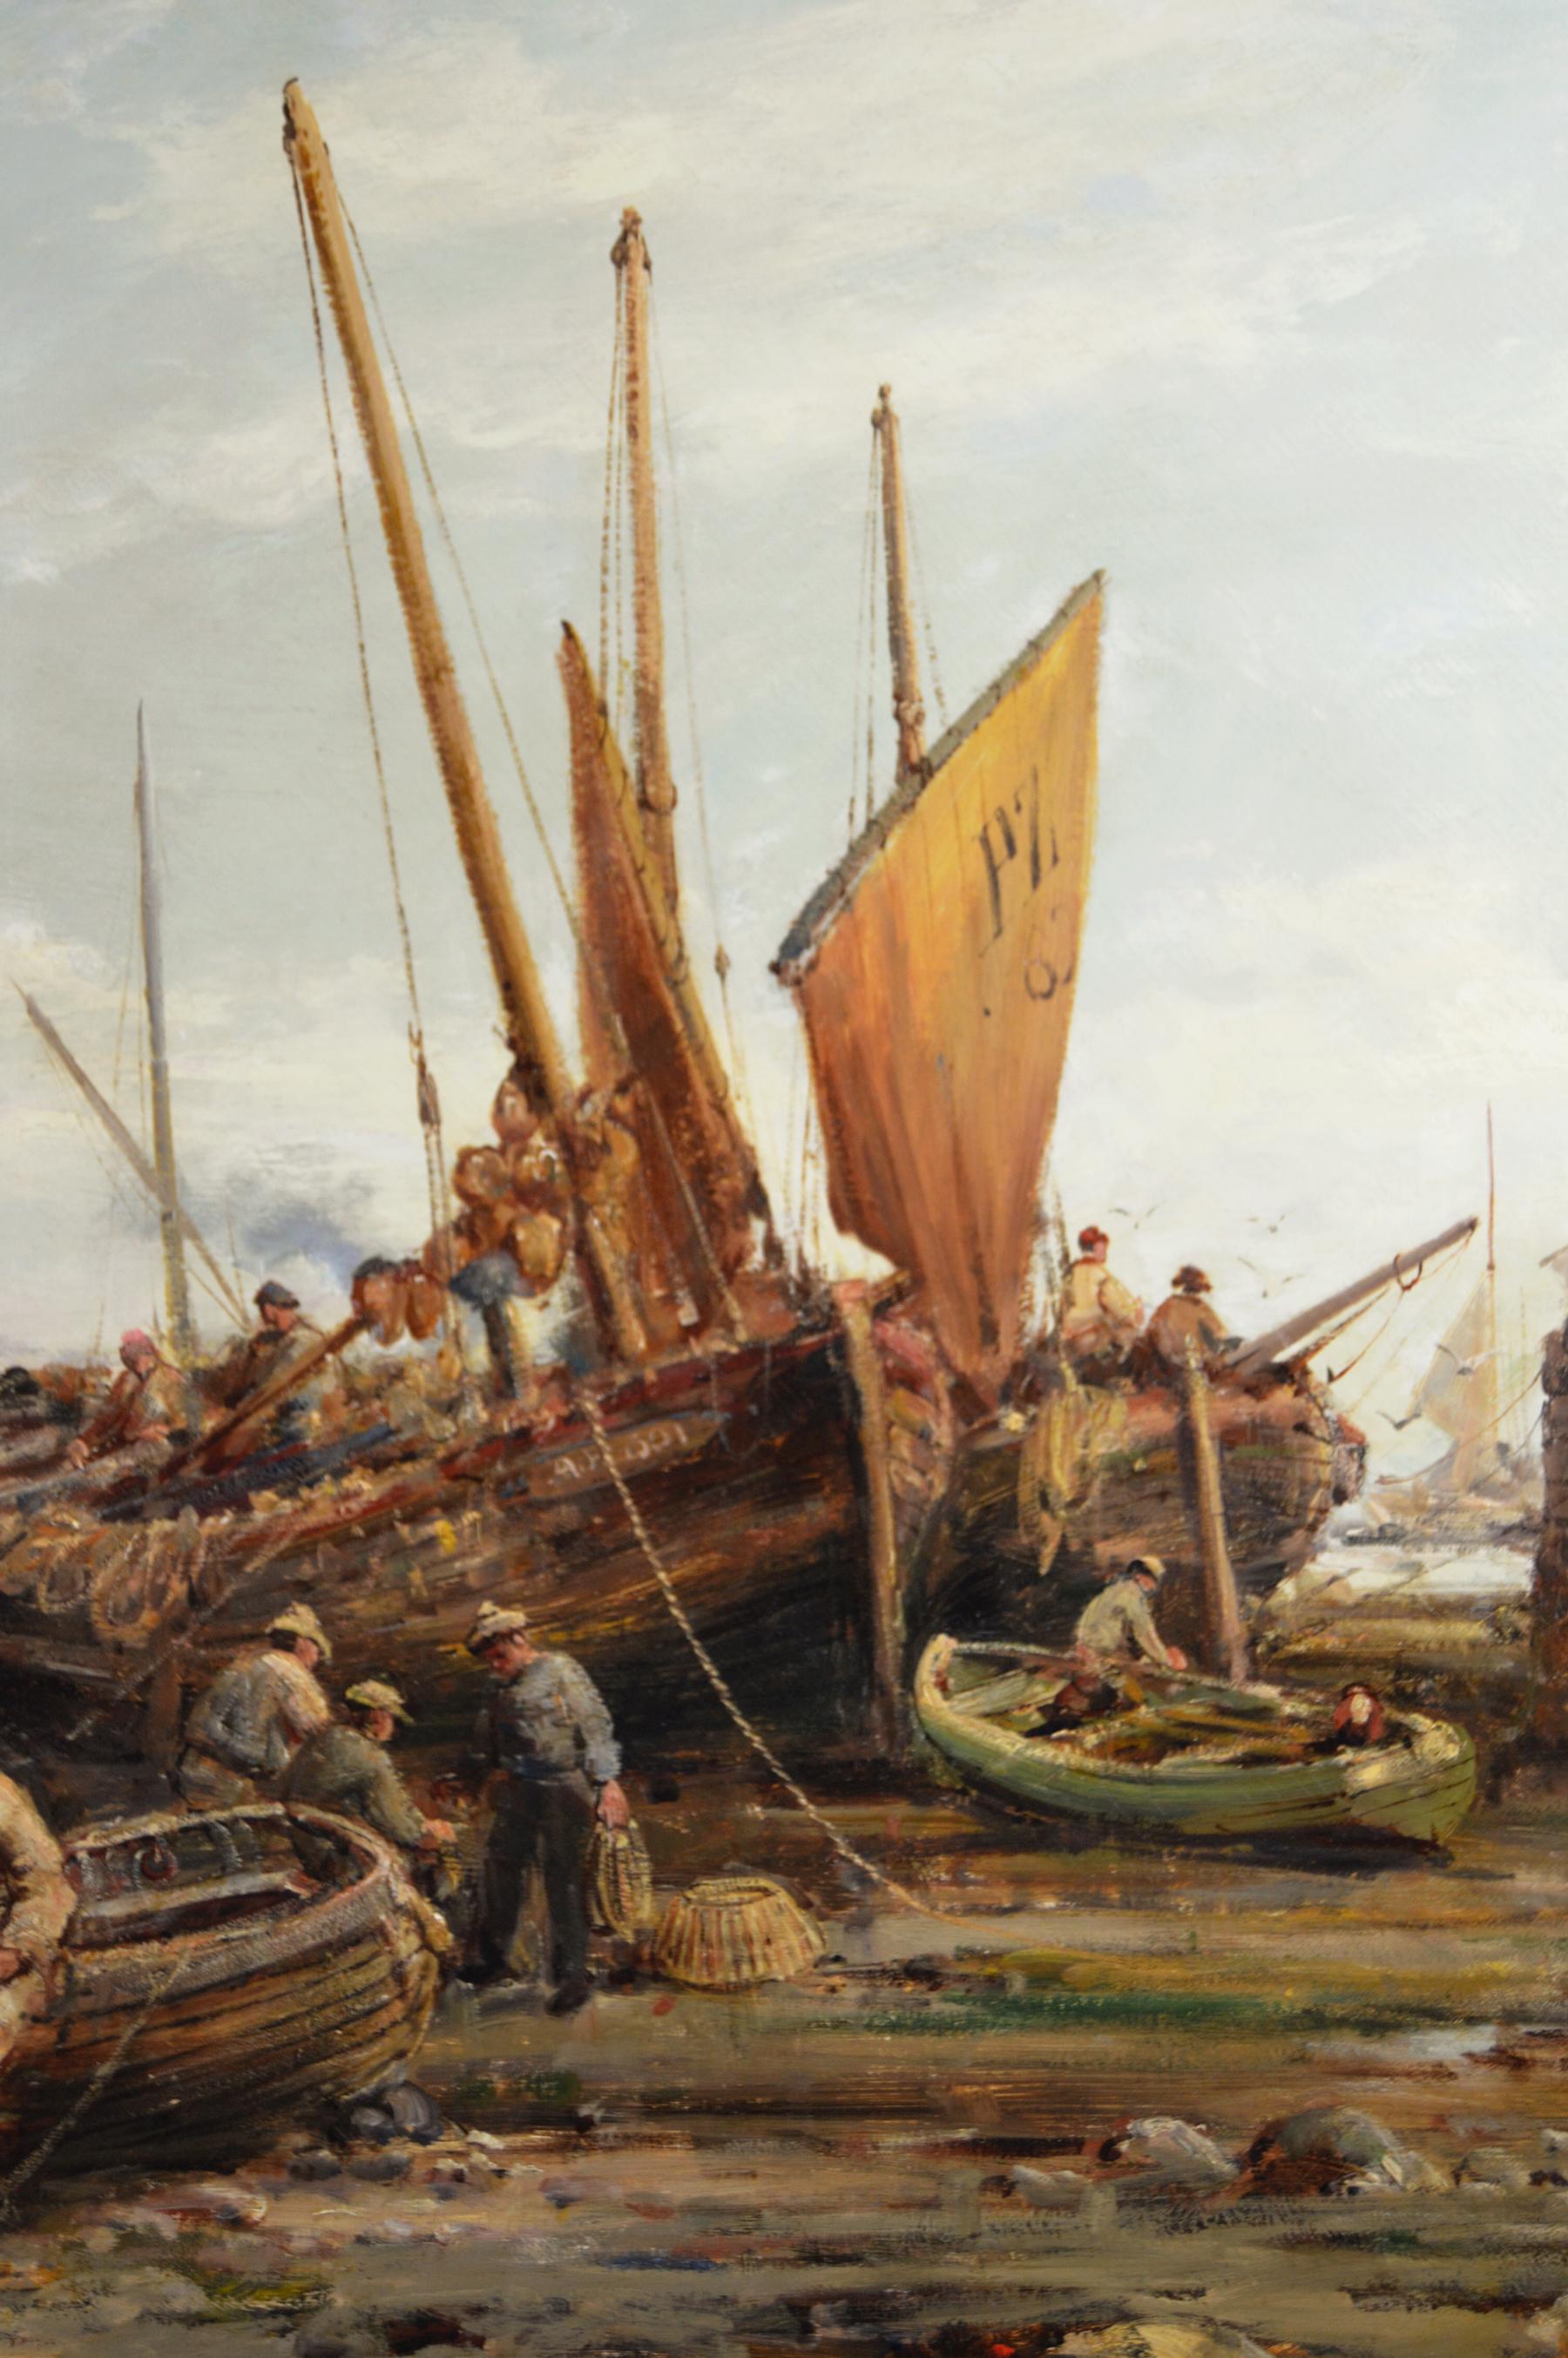 William Edward Webb
Britannique, (1862-1903)
Port de Penzance
Huile sur toile, signée
Taille de l'image : 29 pouces x 45.5 pouces 
Dimensions, y compris le cadre : 38 pouces x 54,5 pouces

Une agréable peinture côtière du port de Penzance à marée